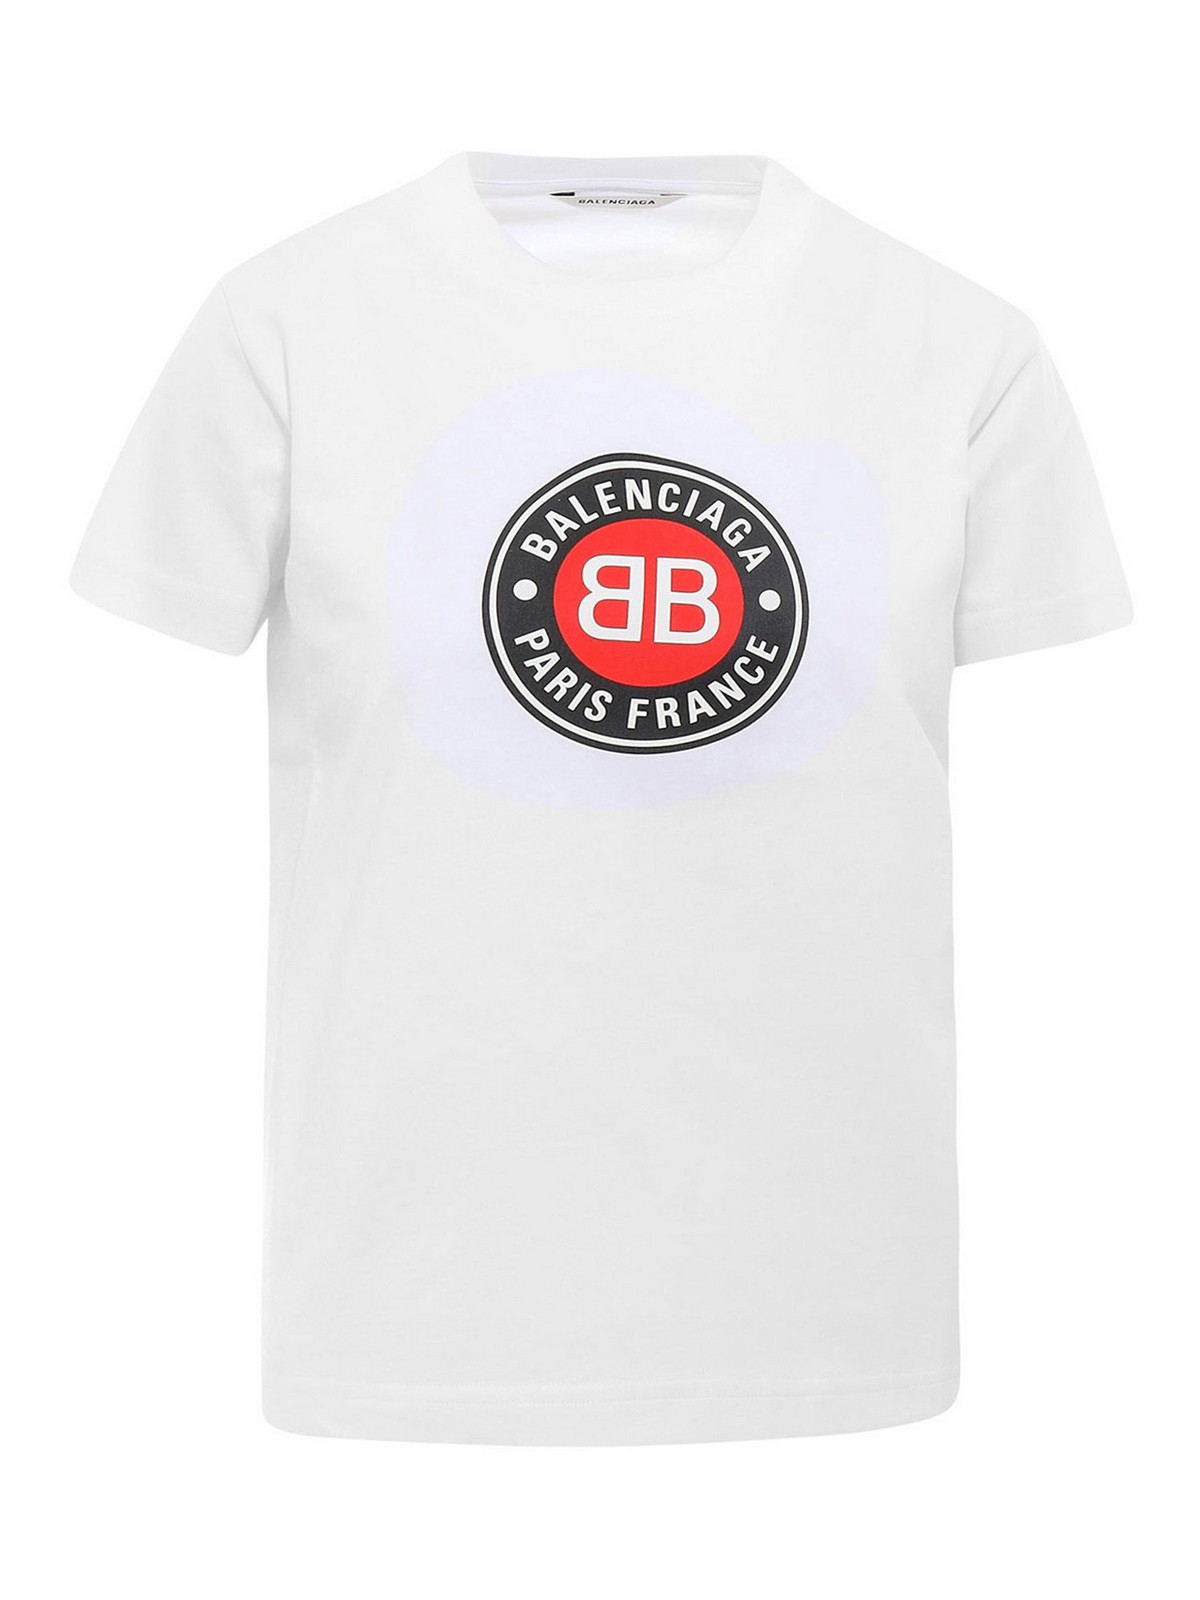 Buy > balenciaga shirt logo print > in stock